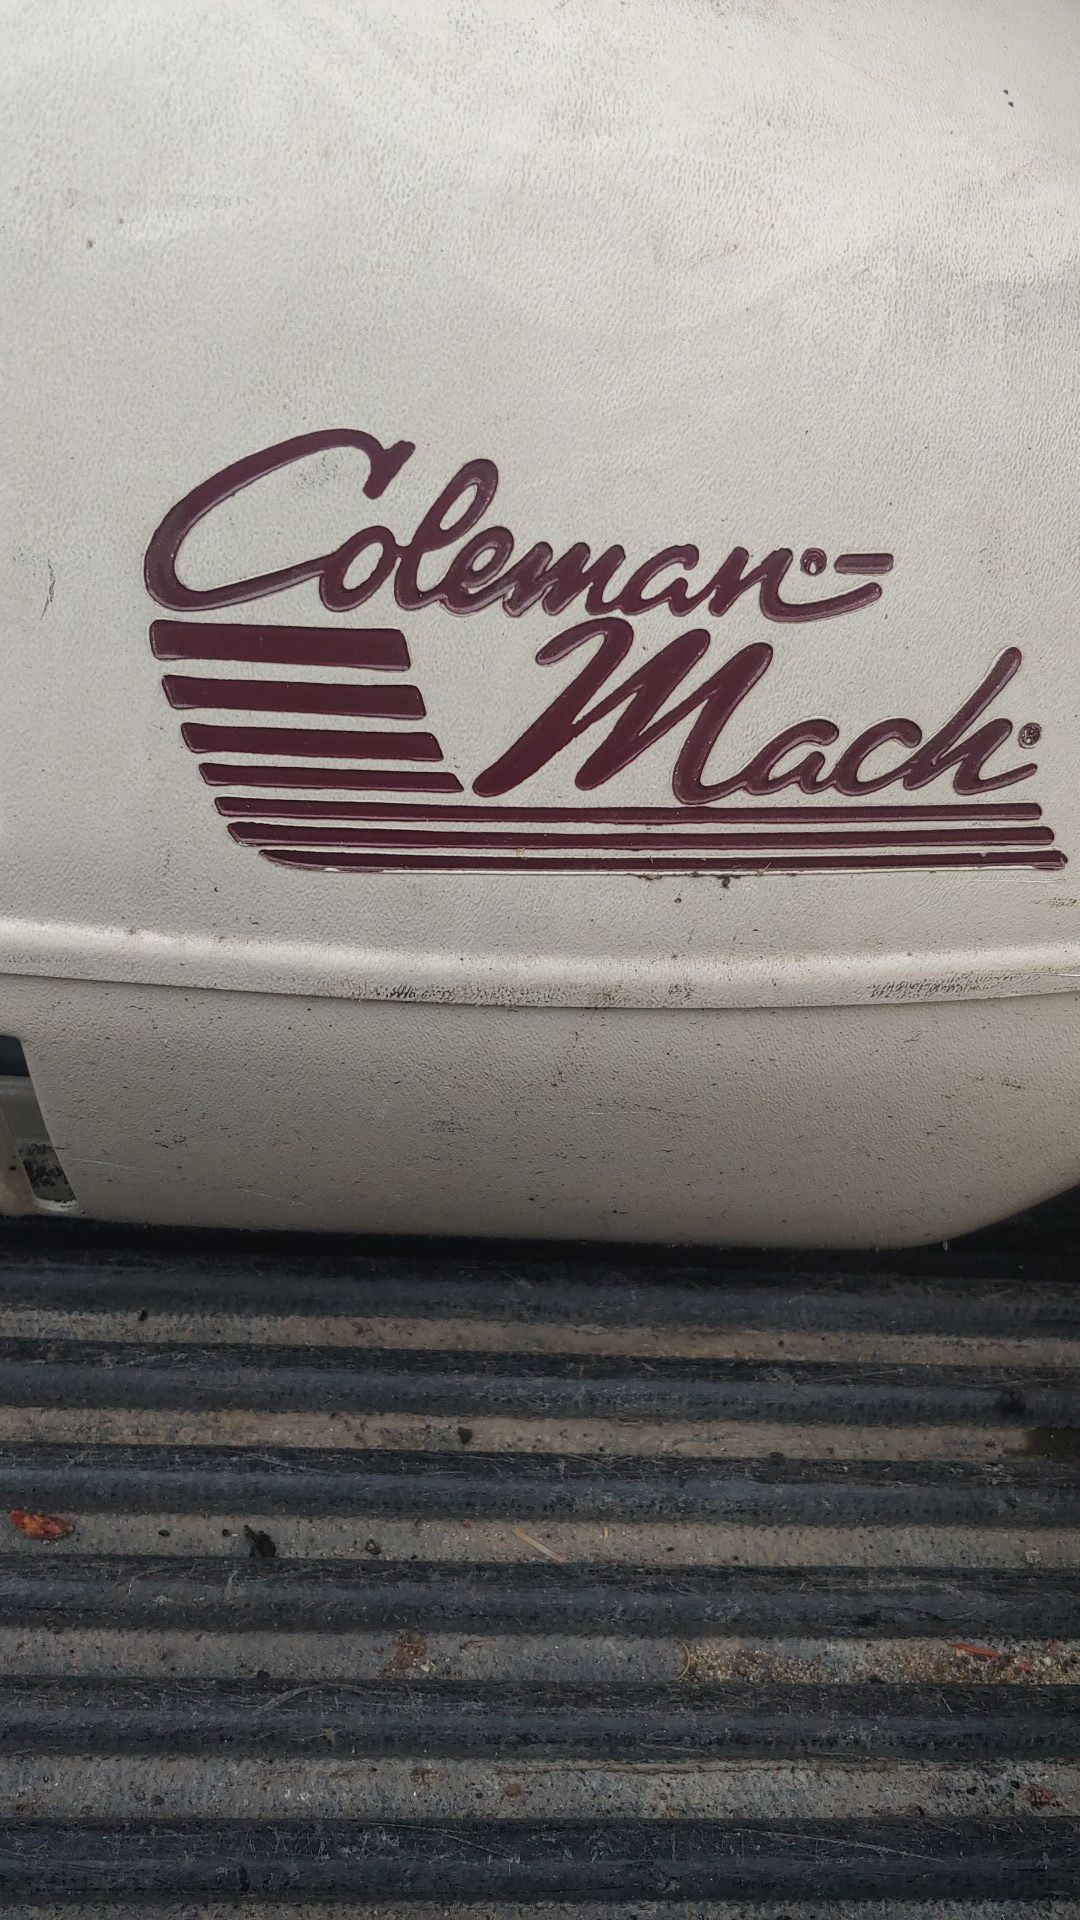 Coleman Mach